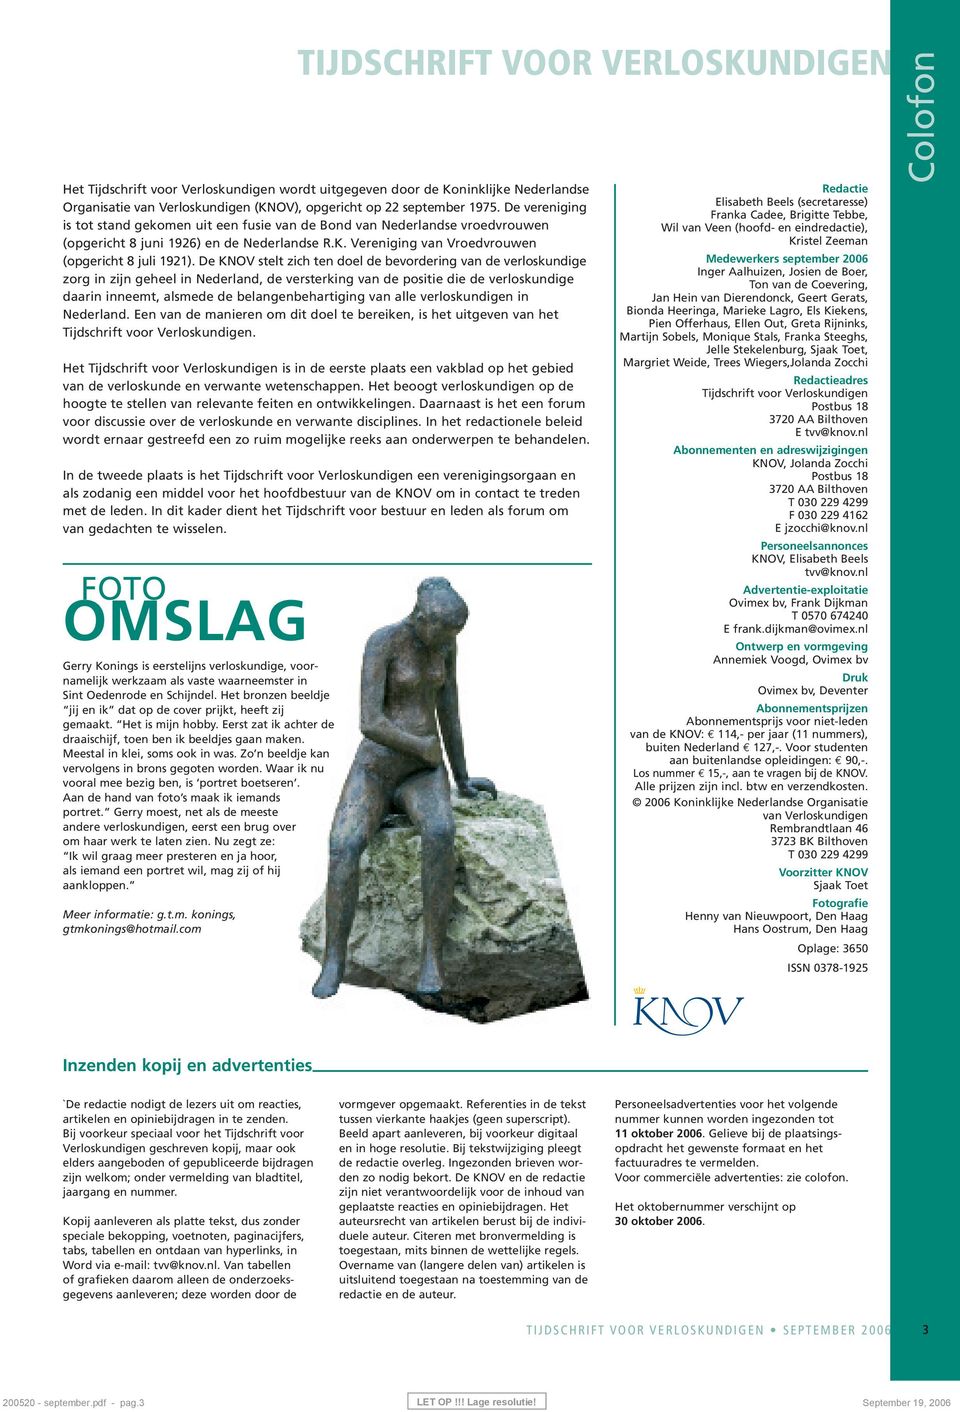 De KNOV stelt zich ten doel de bevordering van de verloskundige zorg in zijn geheel in Nederland, de versterking van de positie die de verloskundige daarin inneemt, alsmede de belangenbehartiging van